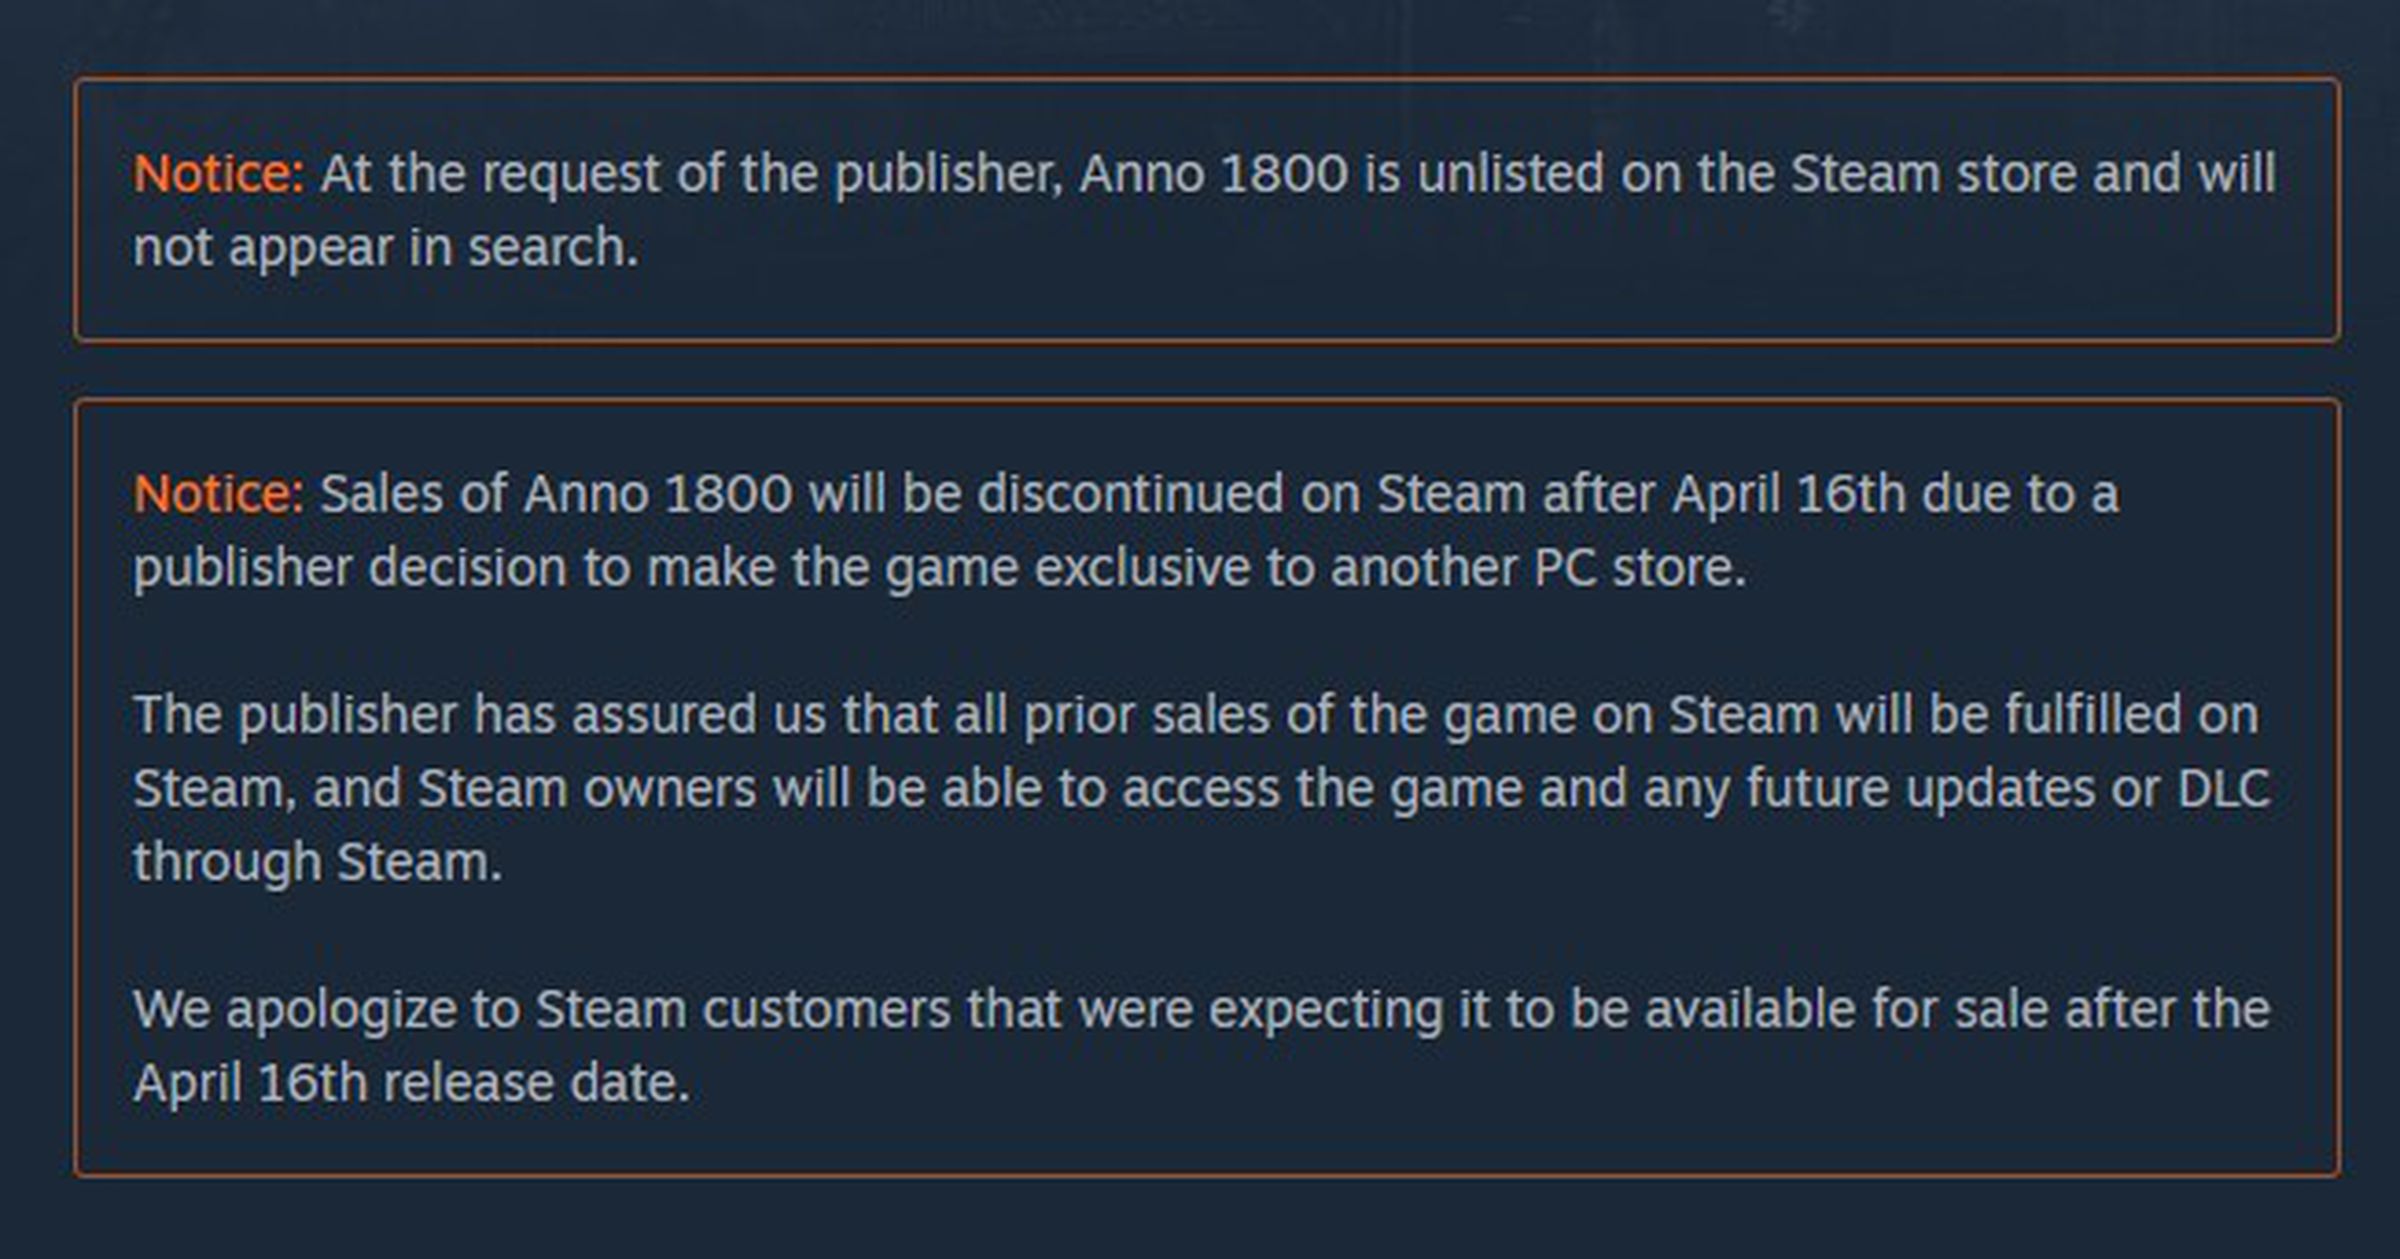 “Aviso: as vendas do Anno 1800 serão descontinuadas no Steam após 16 de abril devido a uma decisão do editor de tornar o jogo exclusivo para outra loja de PC.”